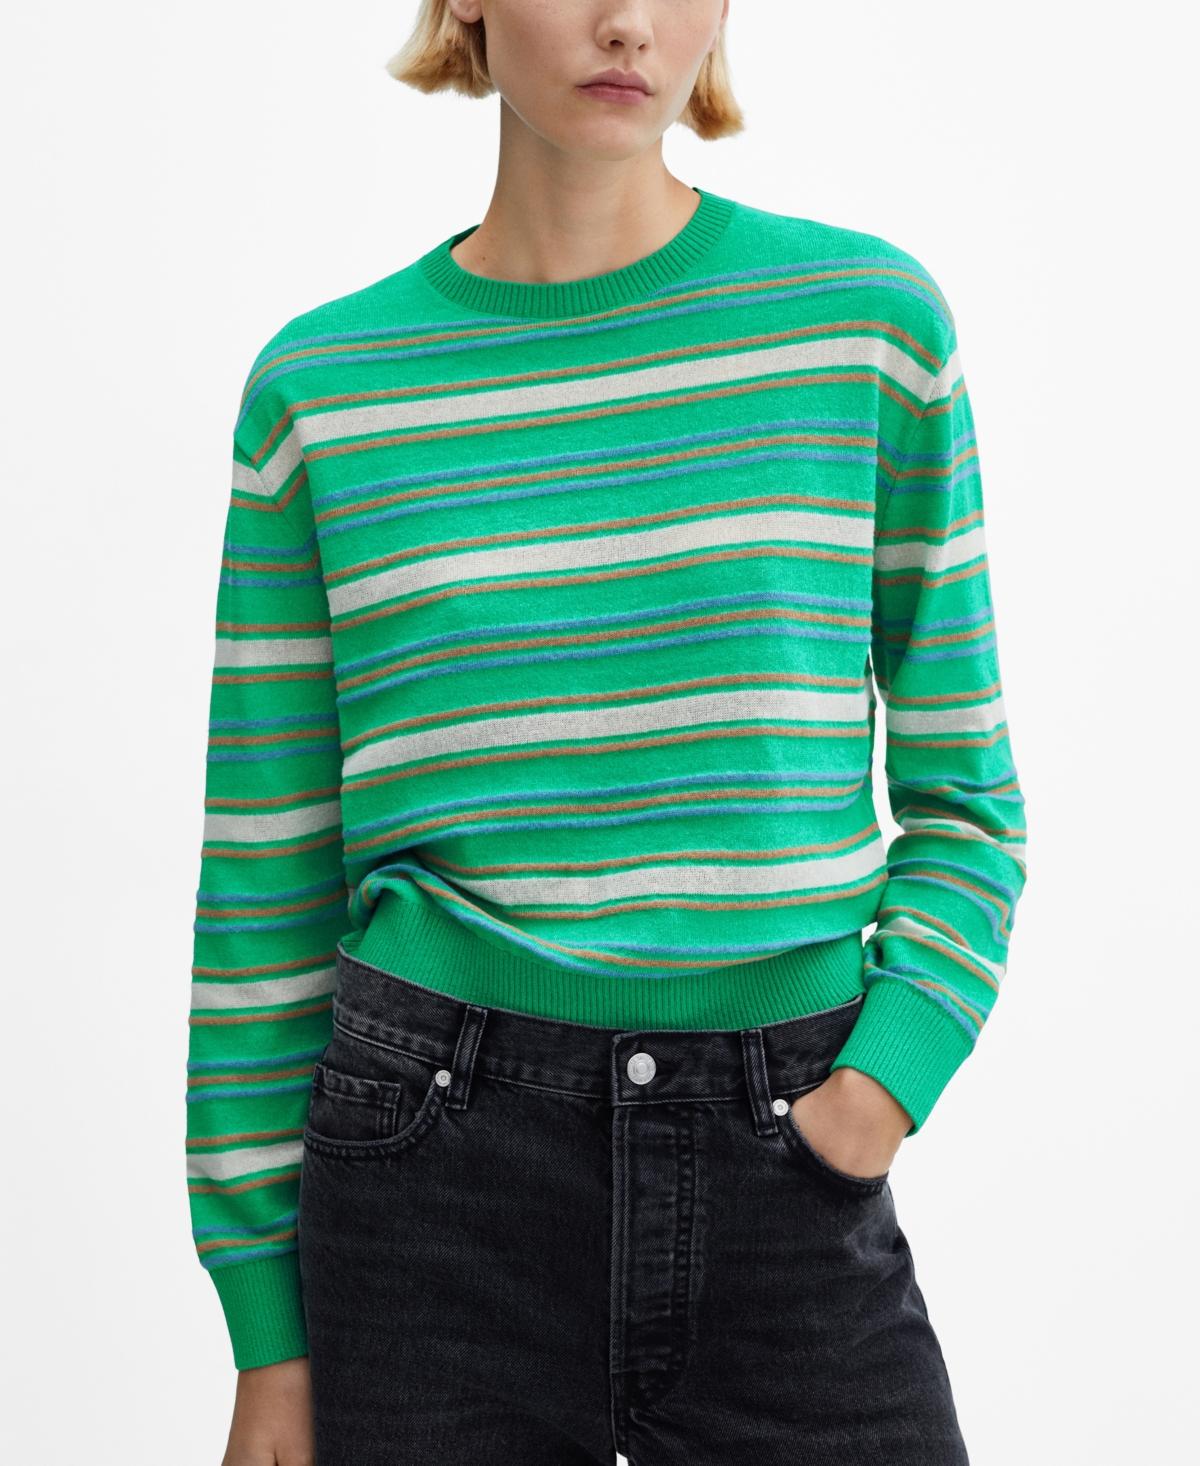 Women's Round-Neck Striped Sweater - Green